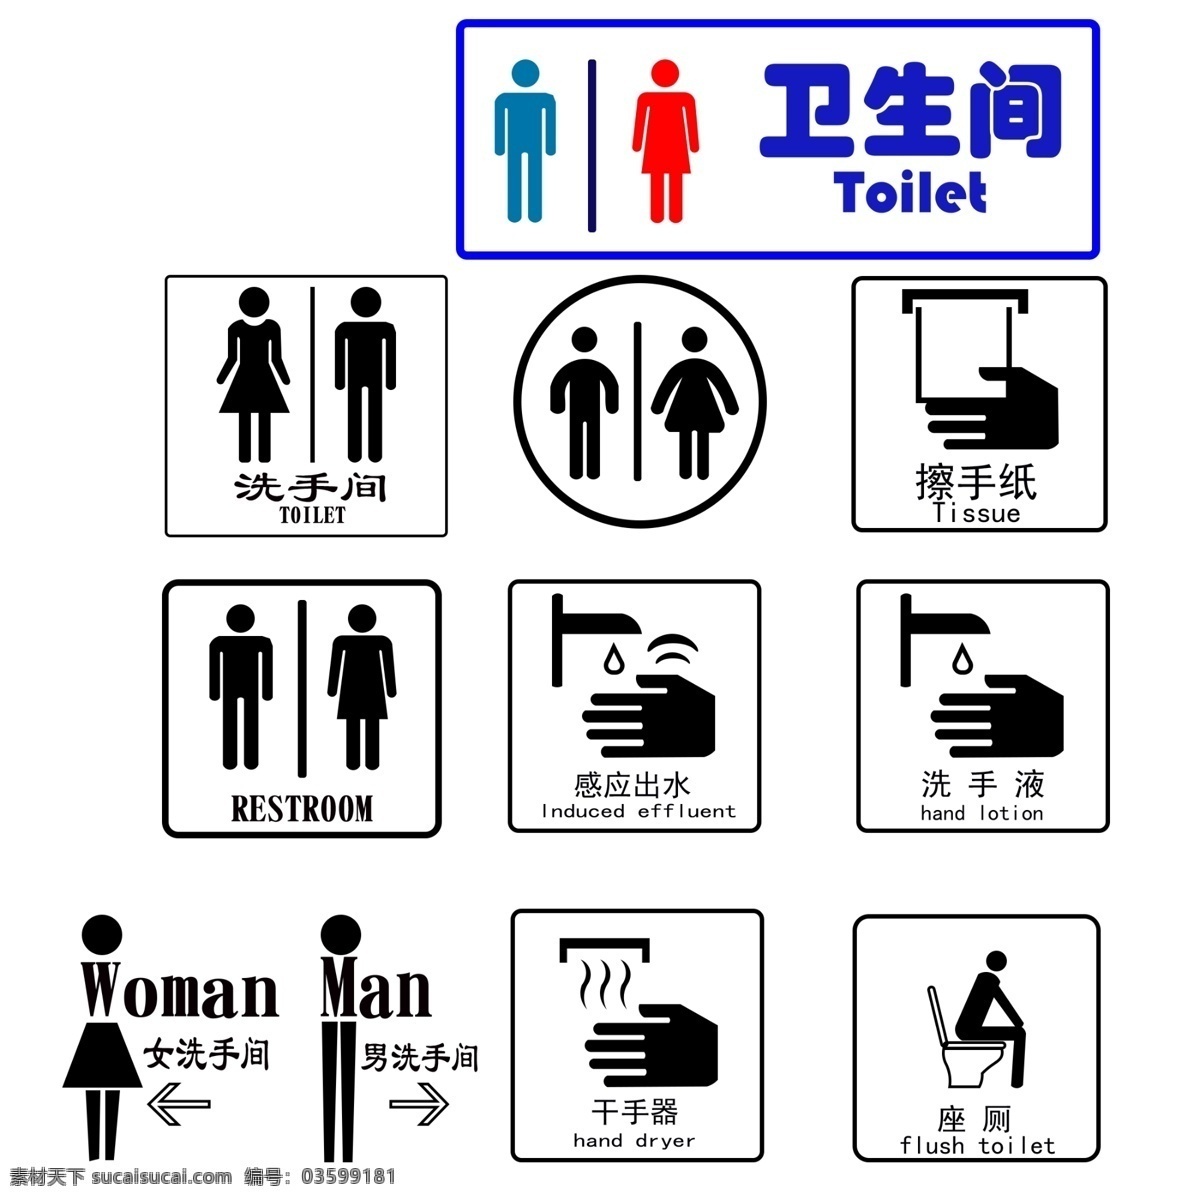 简约 黑色 风格 厕所 图标 男人 女人 卡通手绘 创意设计 手掌 水龙头 水滴 英文字母 汉字 不规则图形 唯美